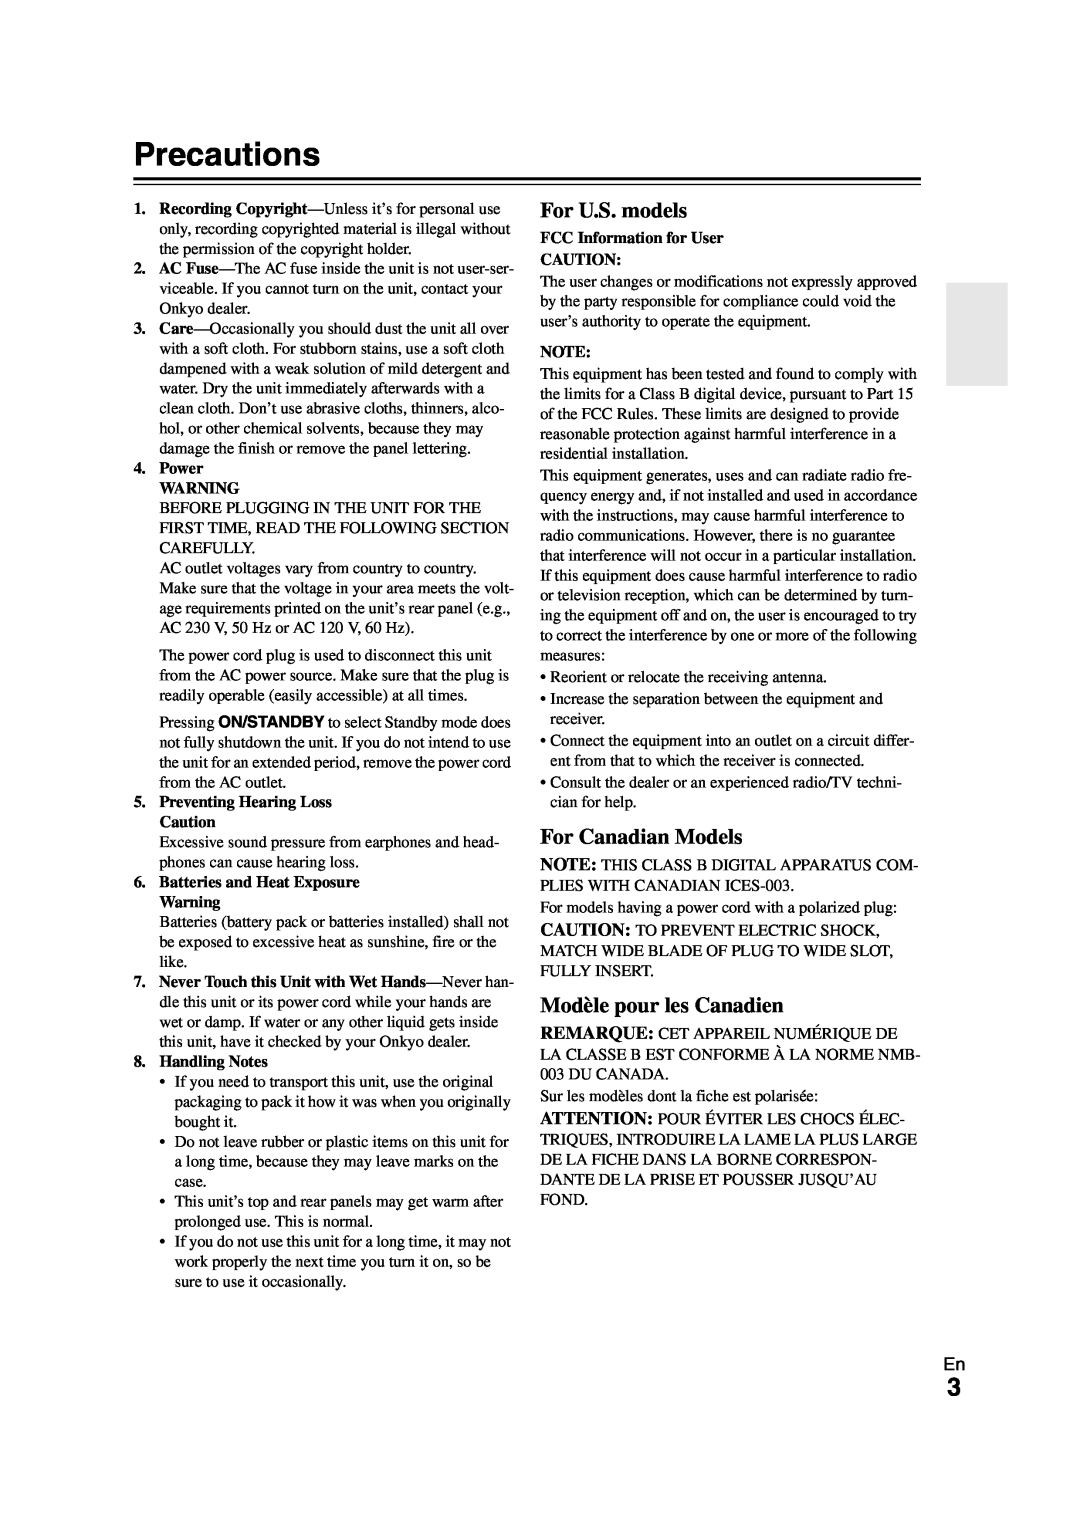 Onkyo SR608 instruction manual Precautions, For U.S. models, For Canadian Models, Modèle pour les Canadien 